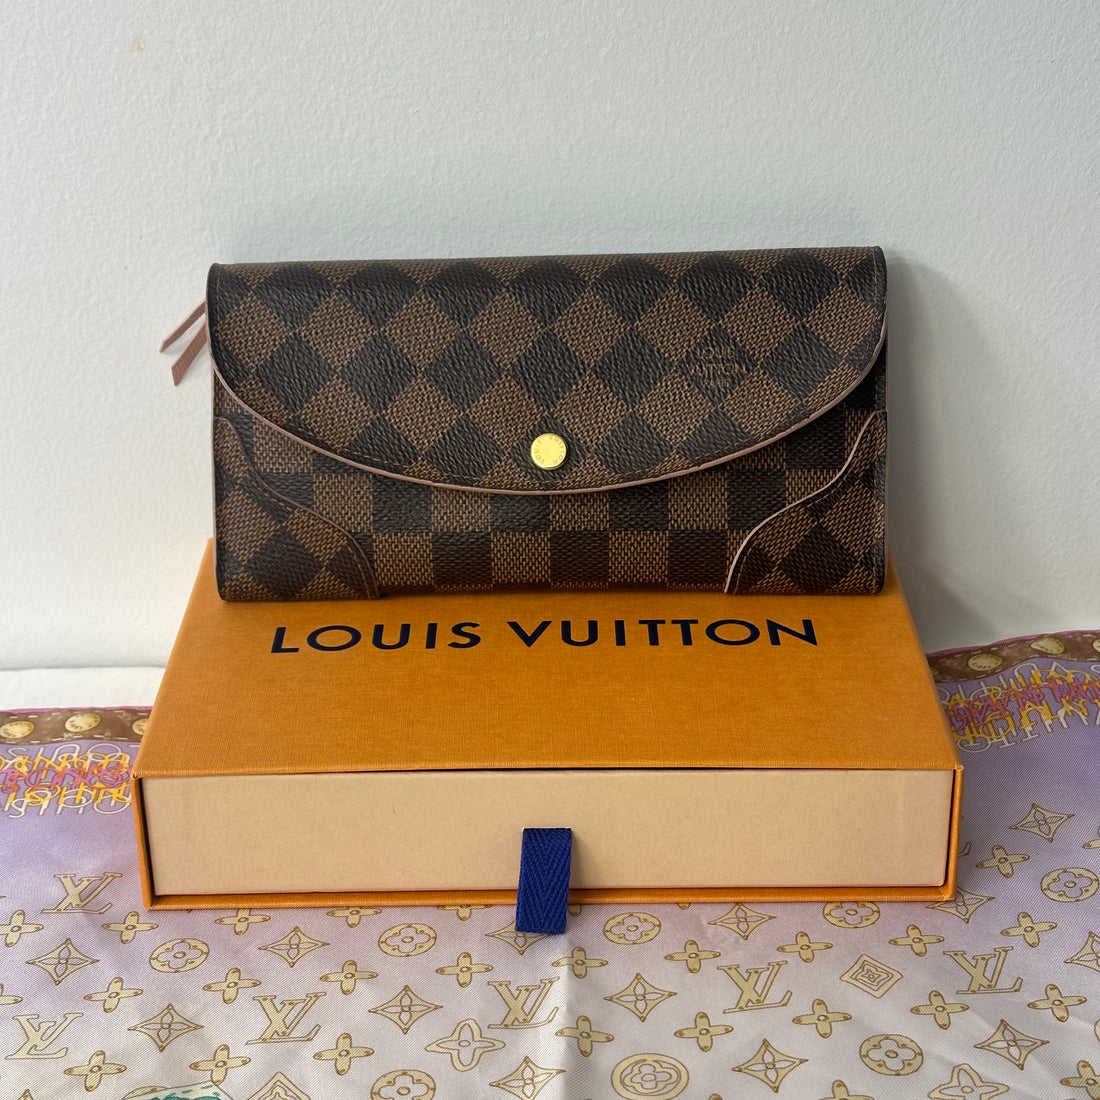 Louis Vuitton - Emilie wallet